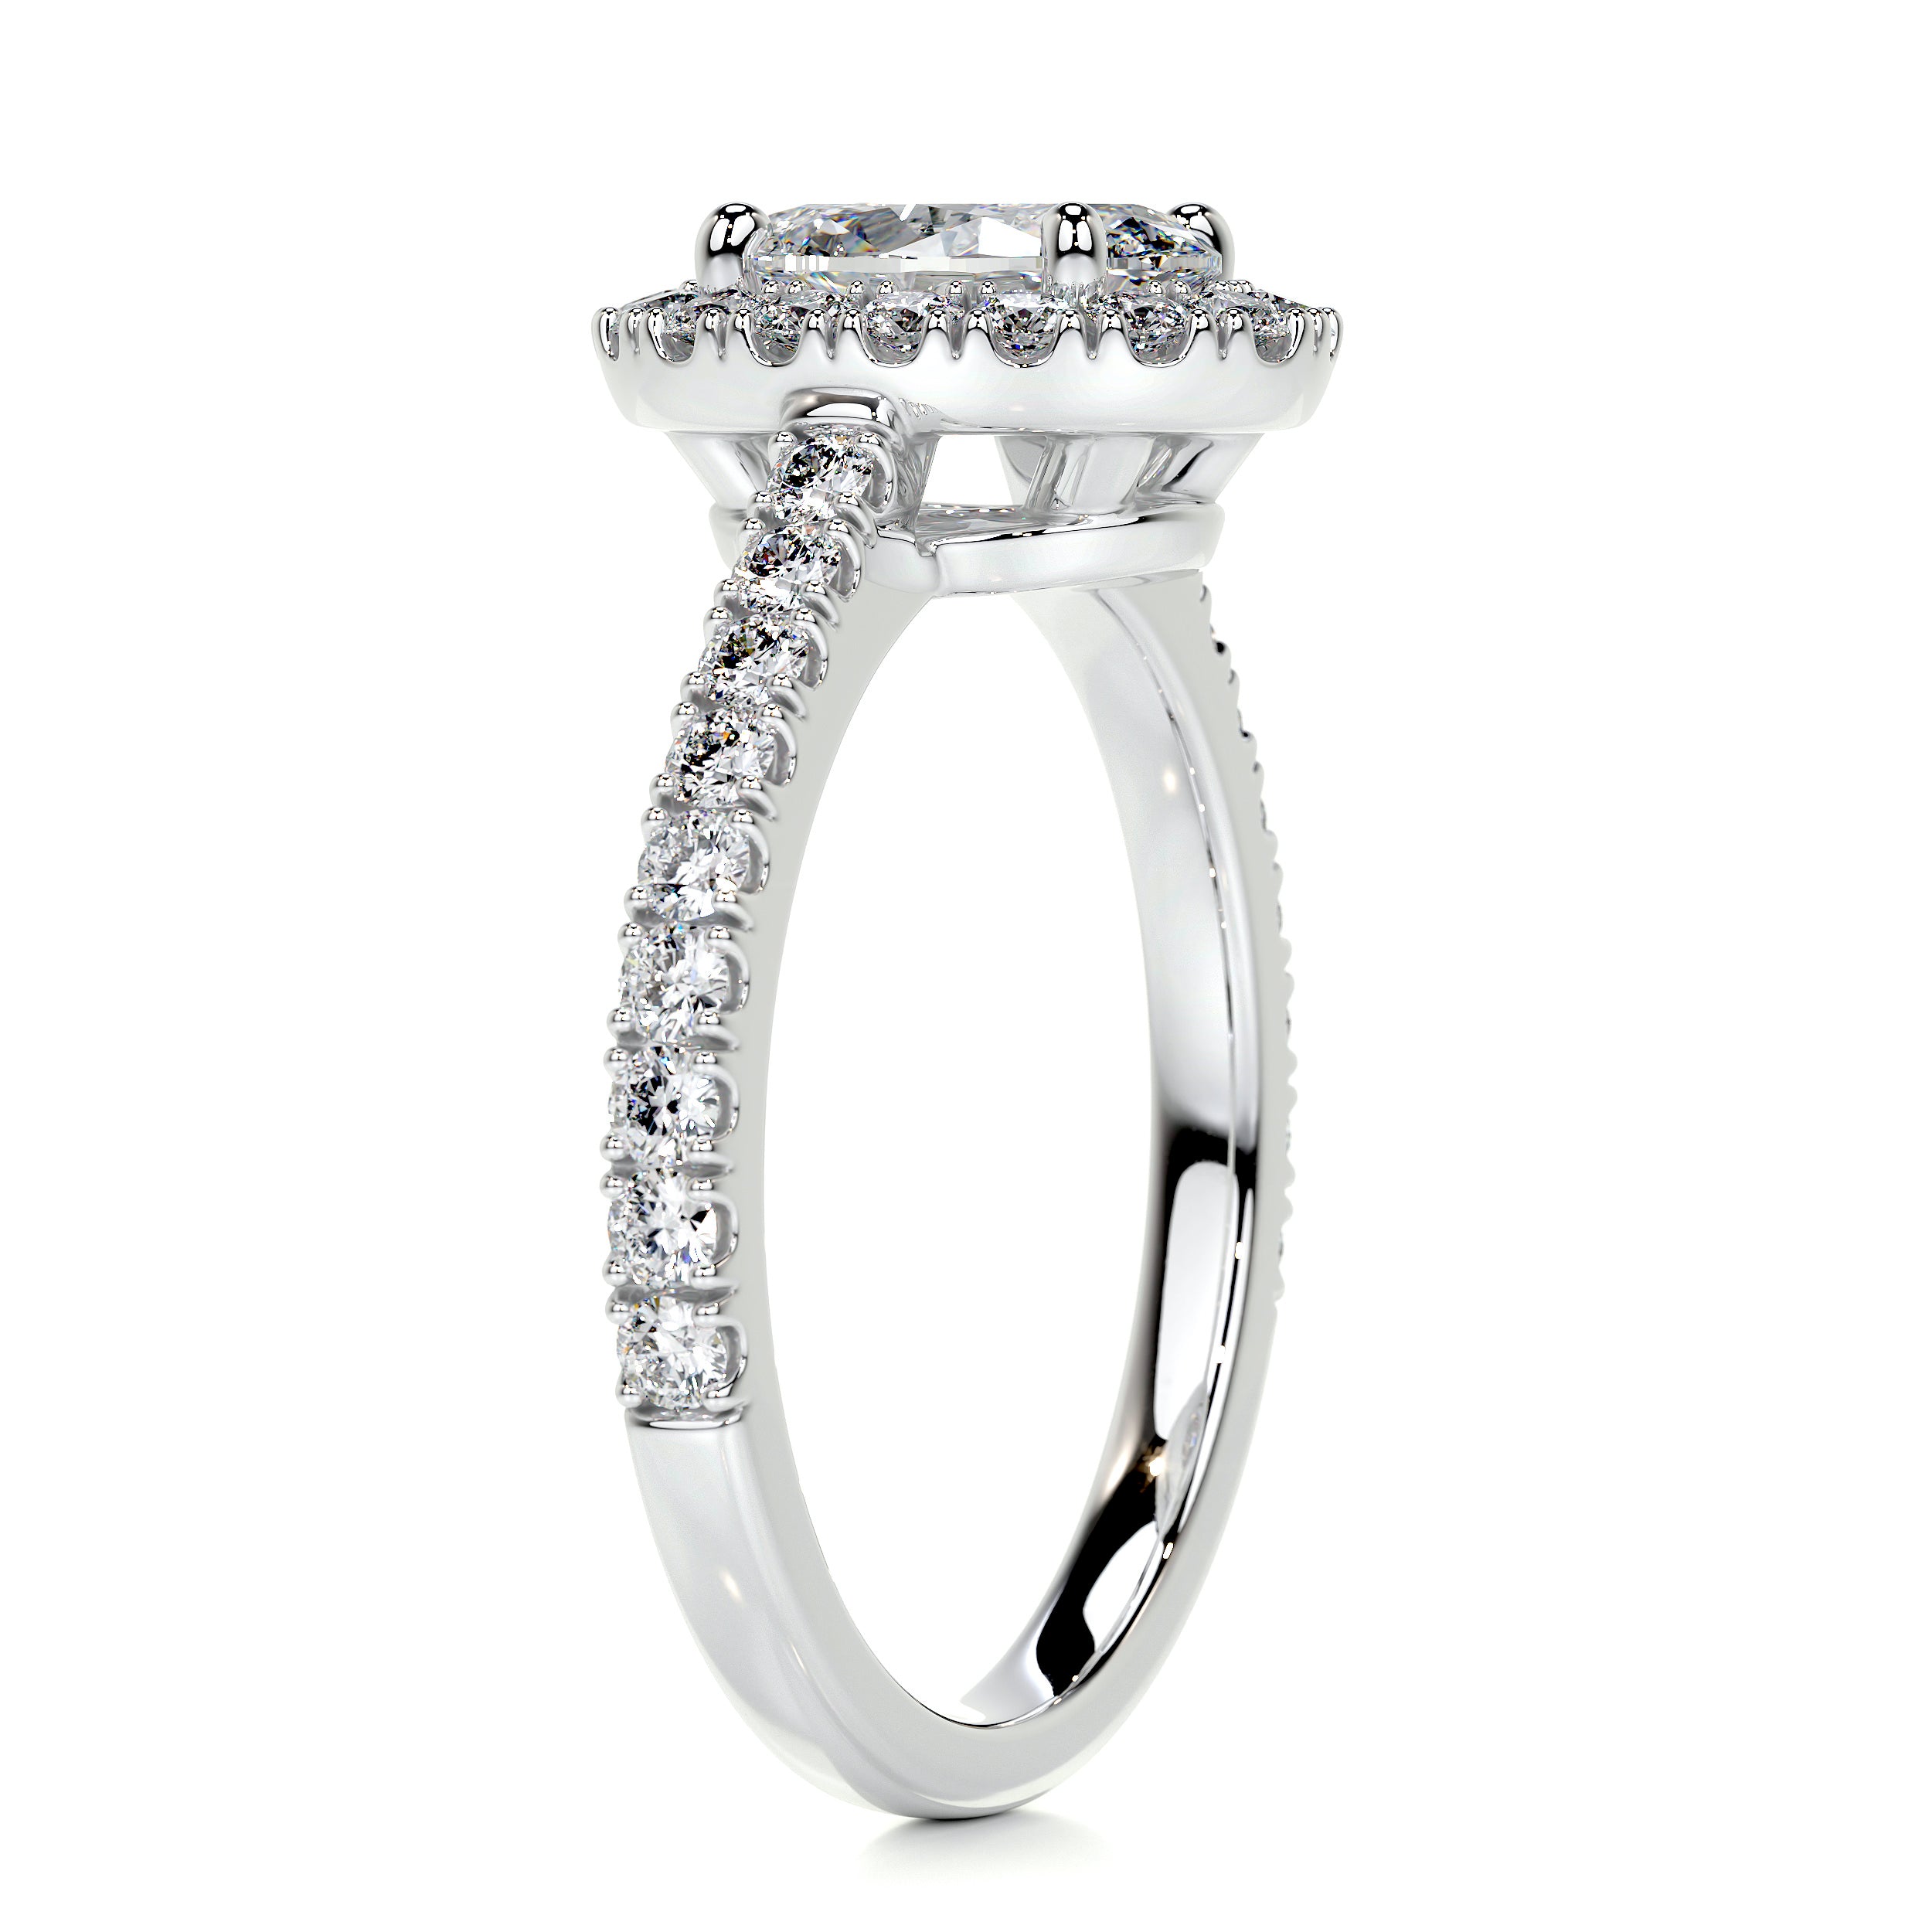 Maria Diamond Engagement Ring   (2 Carat) -14K White Gold